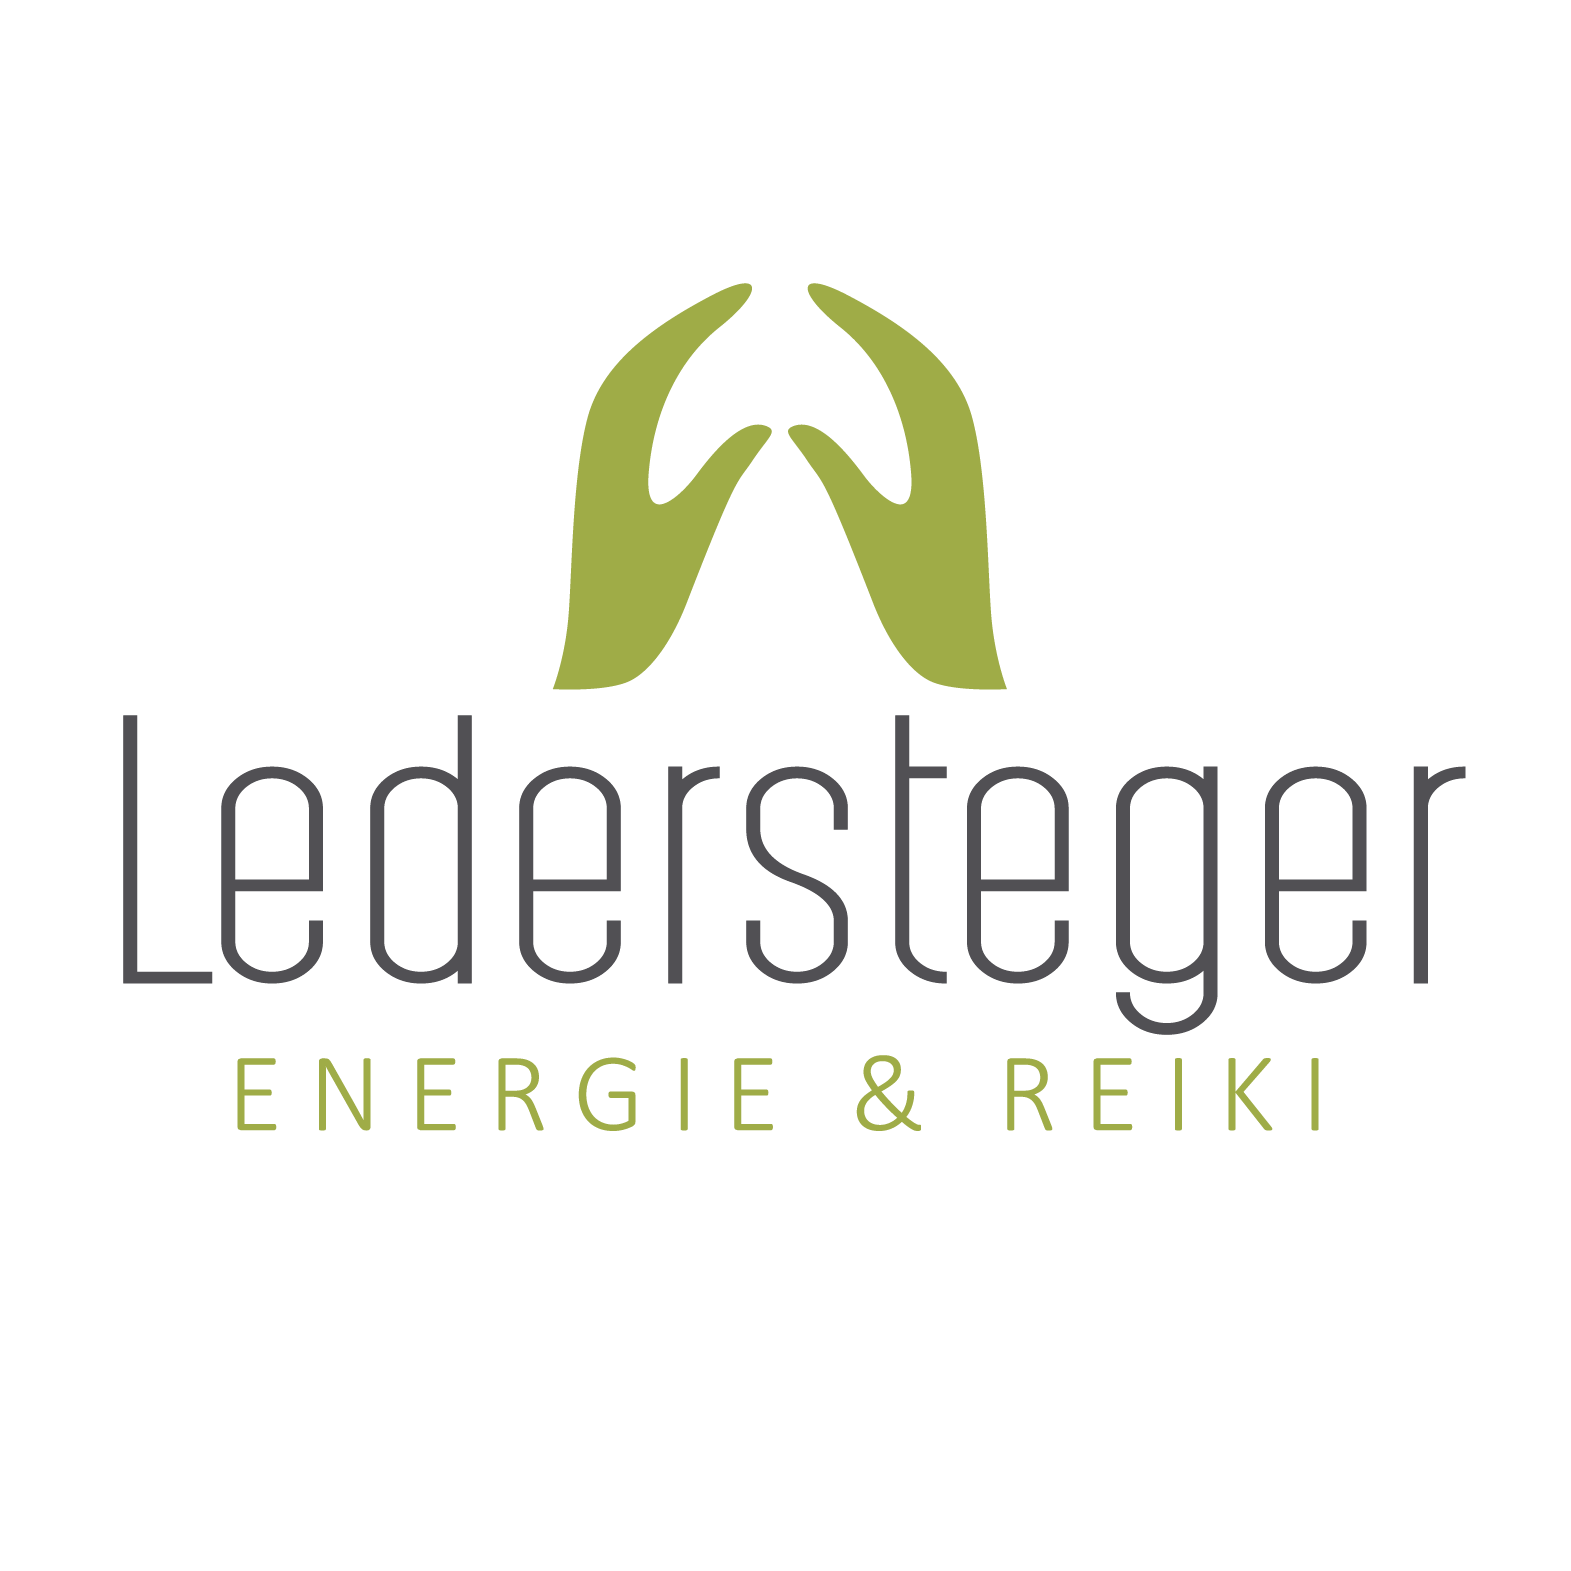 Ledersteger Energie & Reiki